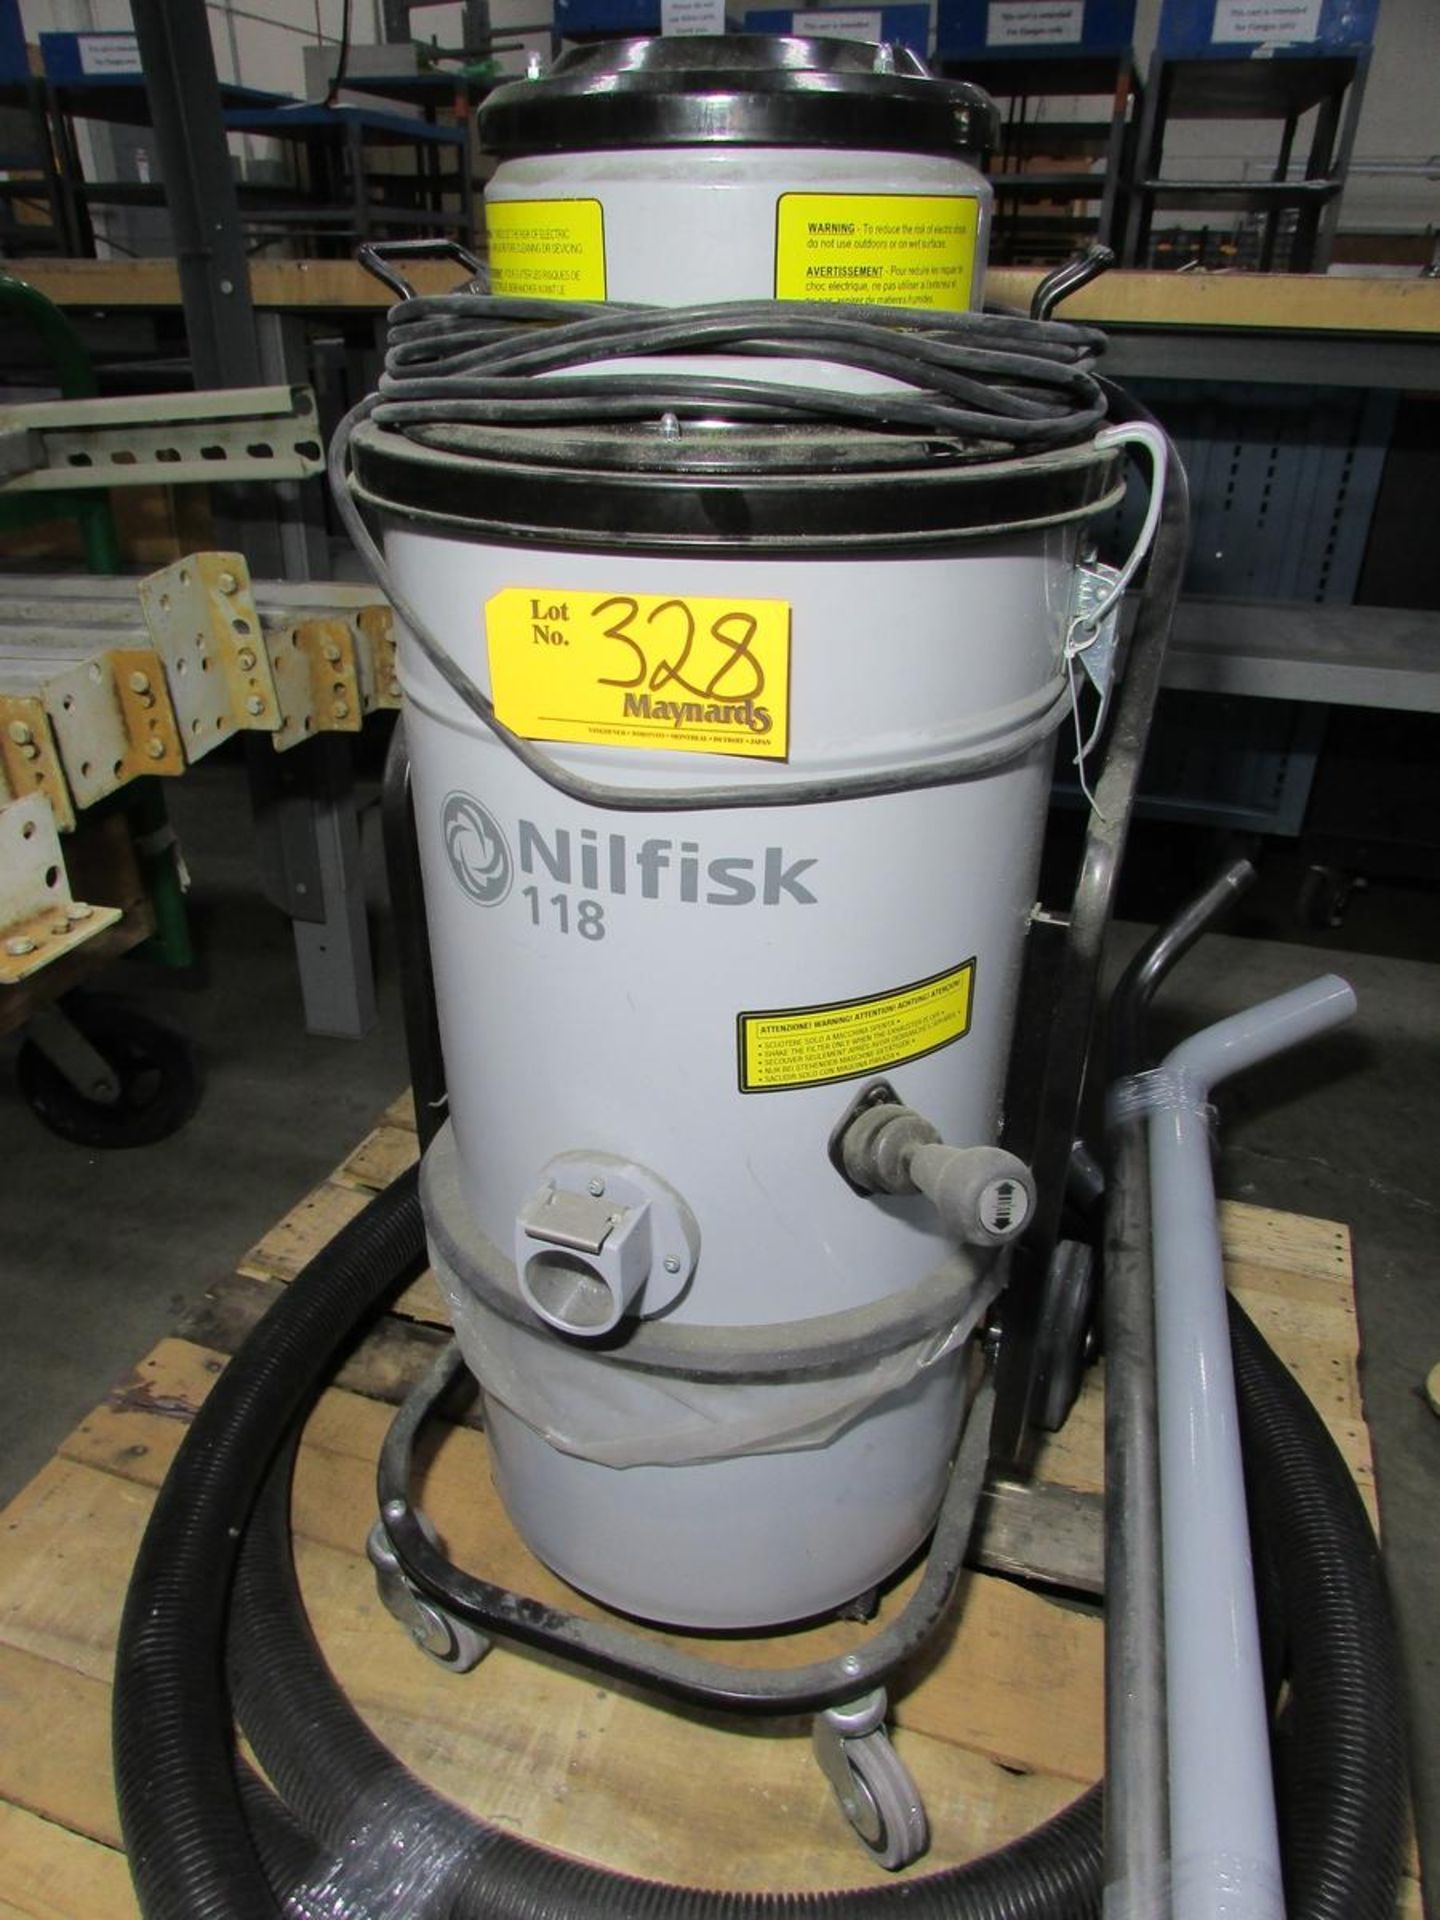 Nilfisk Model 118 Industrial Vacuum Cleaner - Image 3 of 6